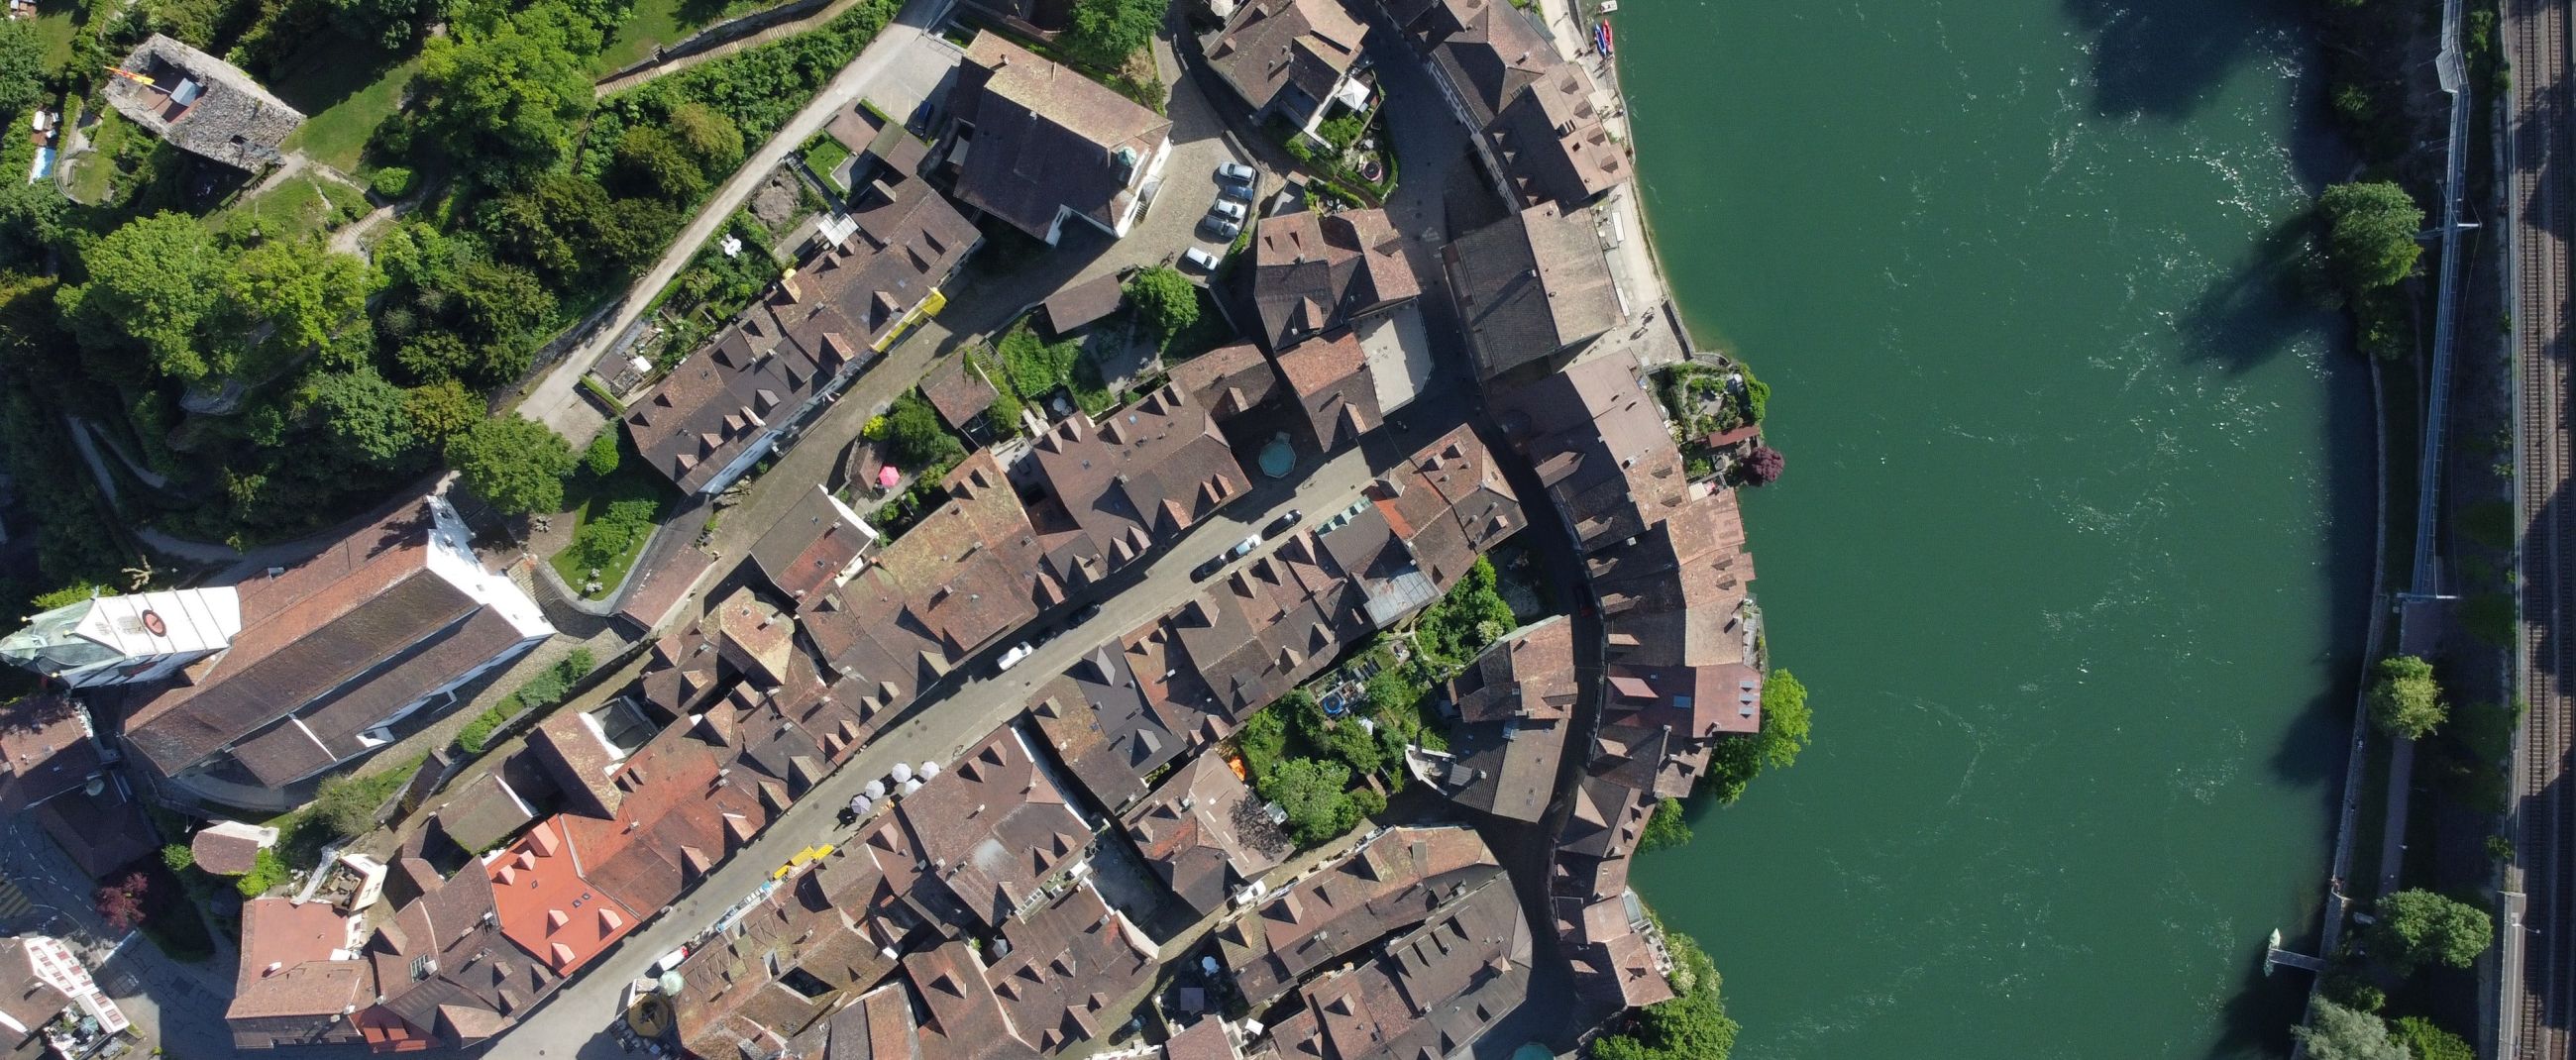 Riviere suisse drone ville